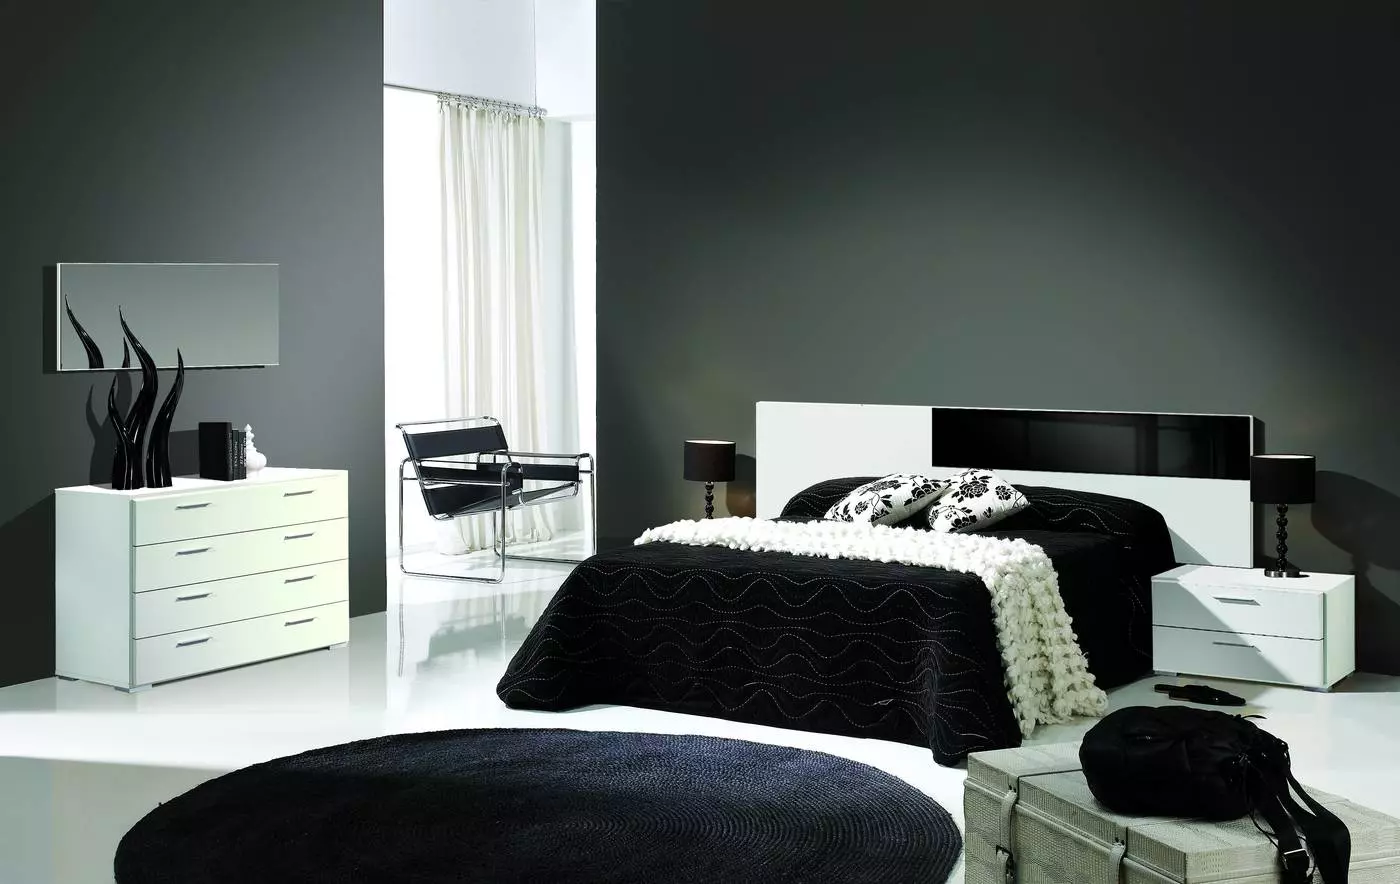 Oferta De Mueble Online Dormitorio Moderno Online Dormitorio Blanco C Negro Ref C 082 Desactualizada Muebles Peymar